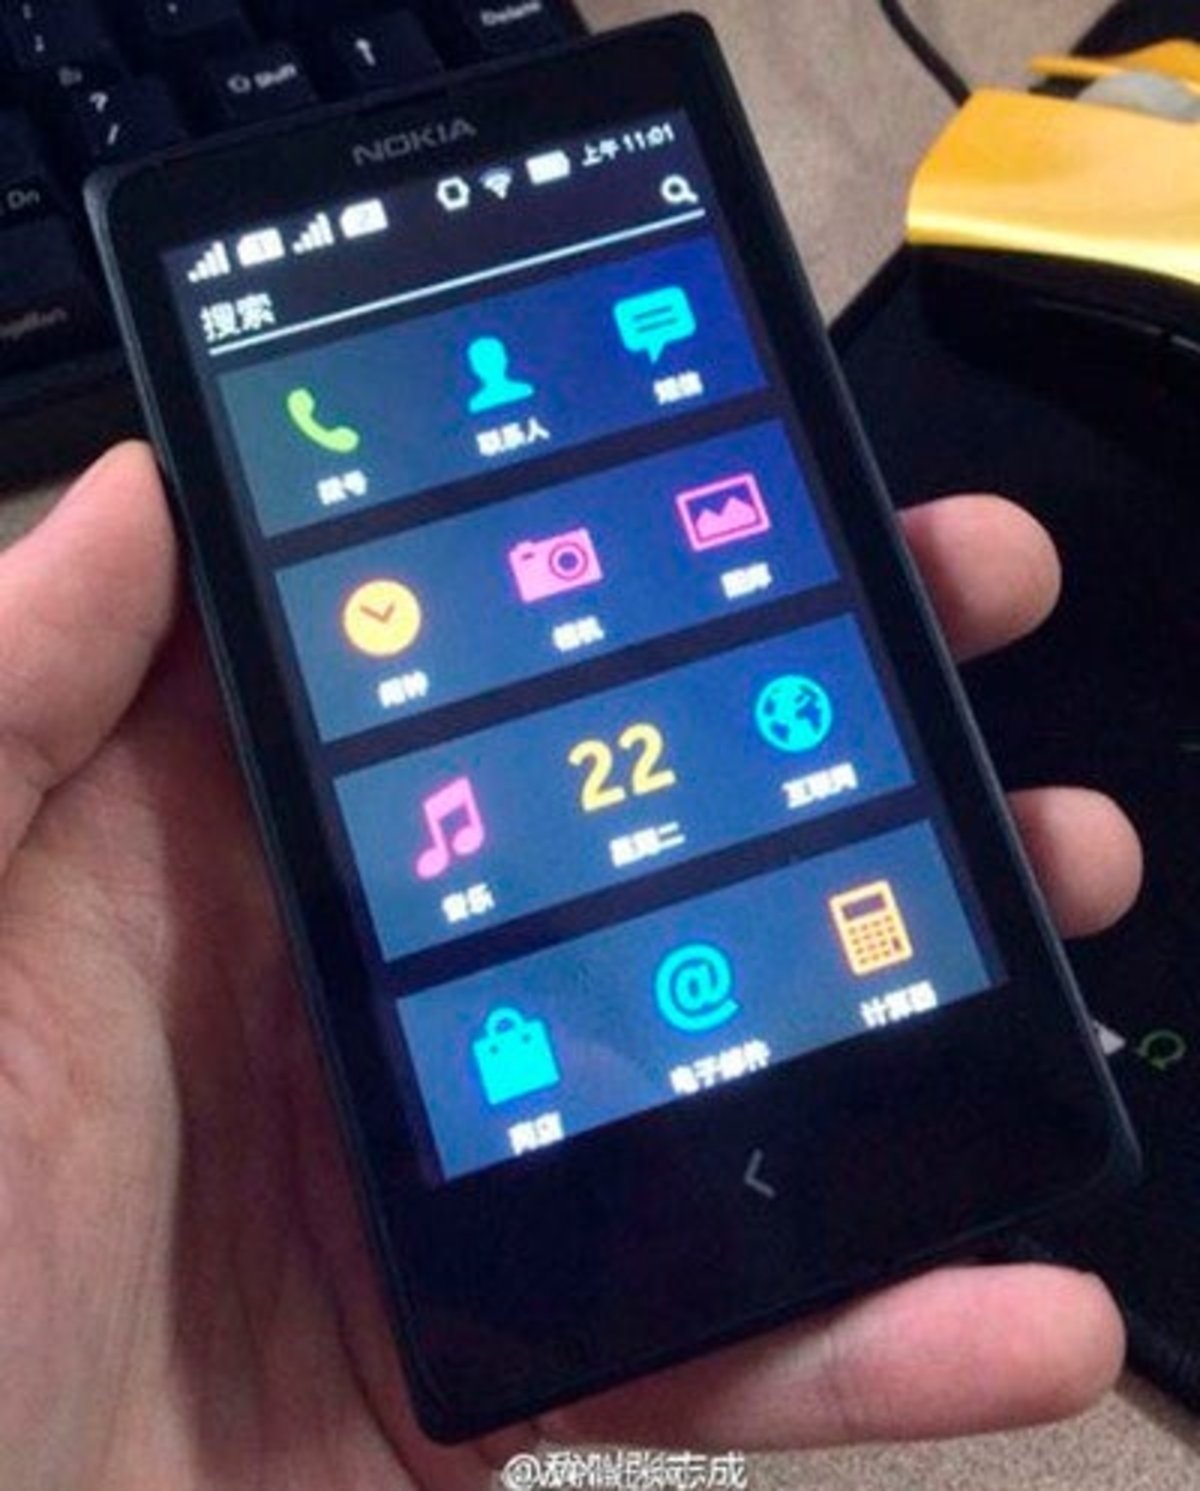 Filtración de otra pantalla del Nokia Normandy